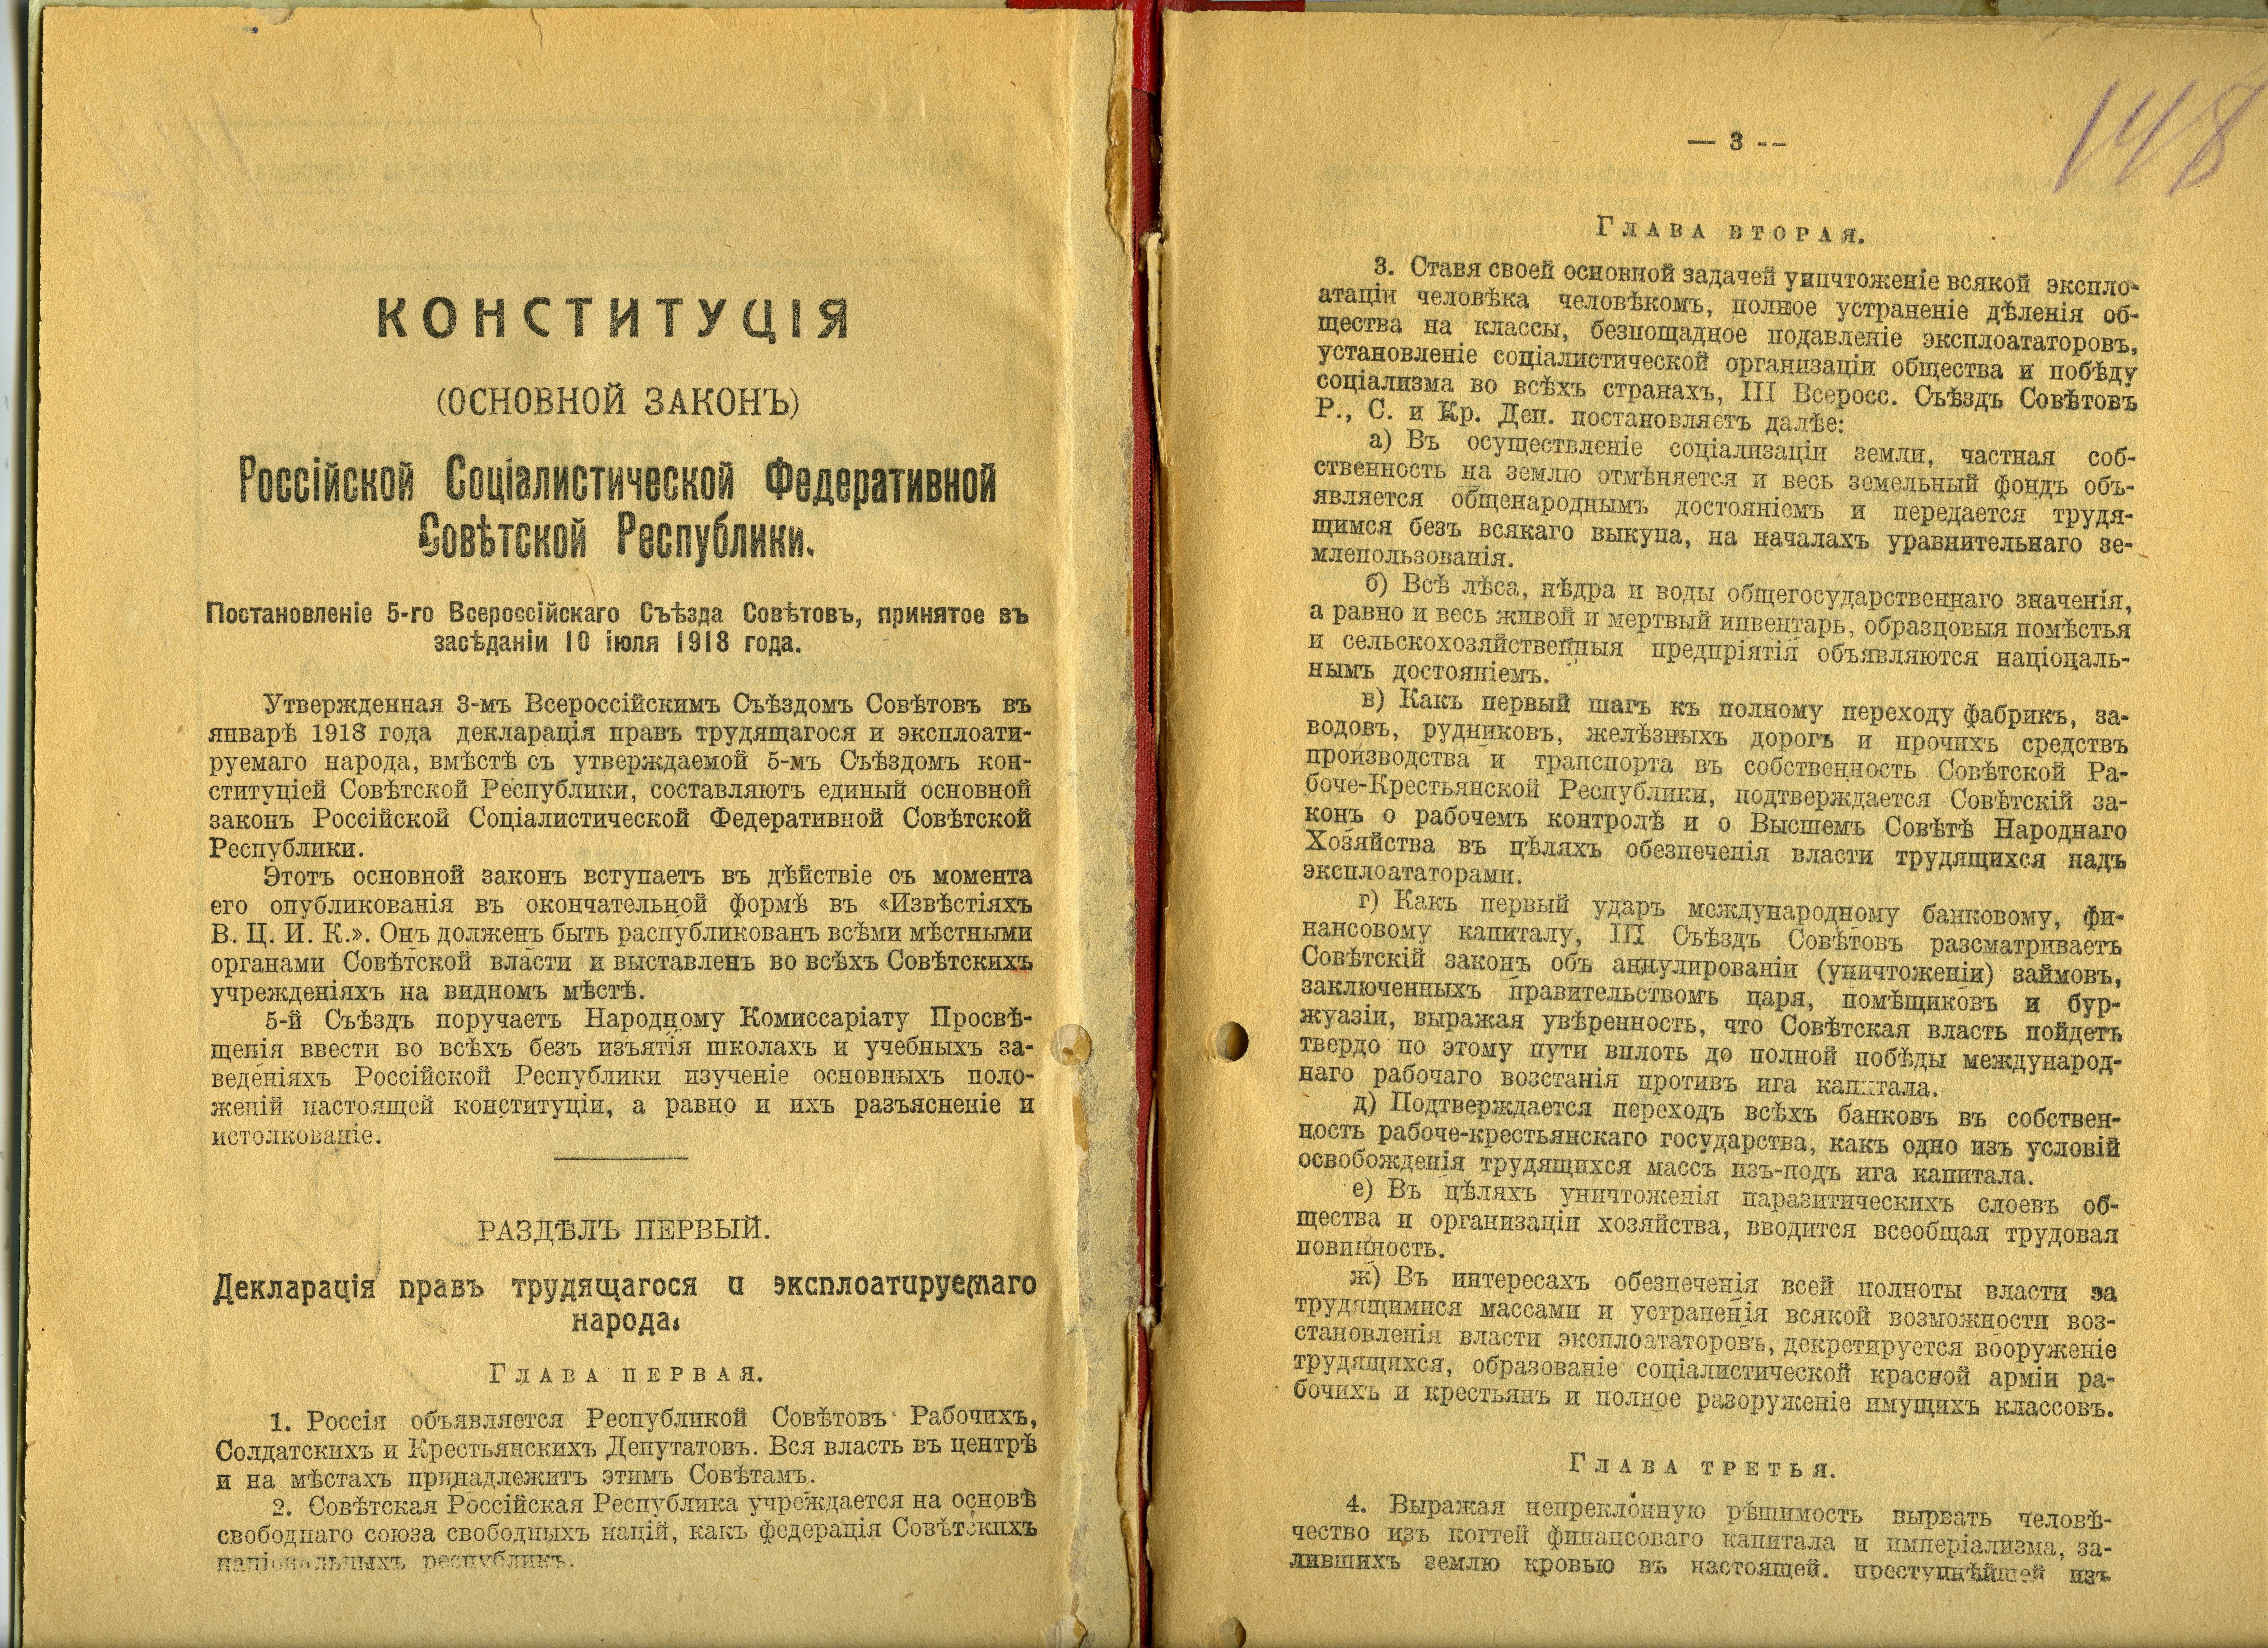 НСБ ГАТО. Конституция РСФСР. М., 1918. С. 2-3